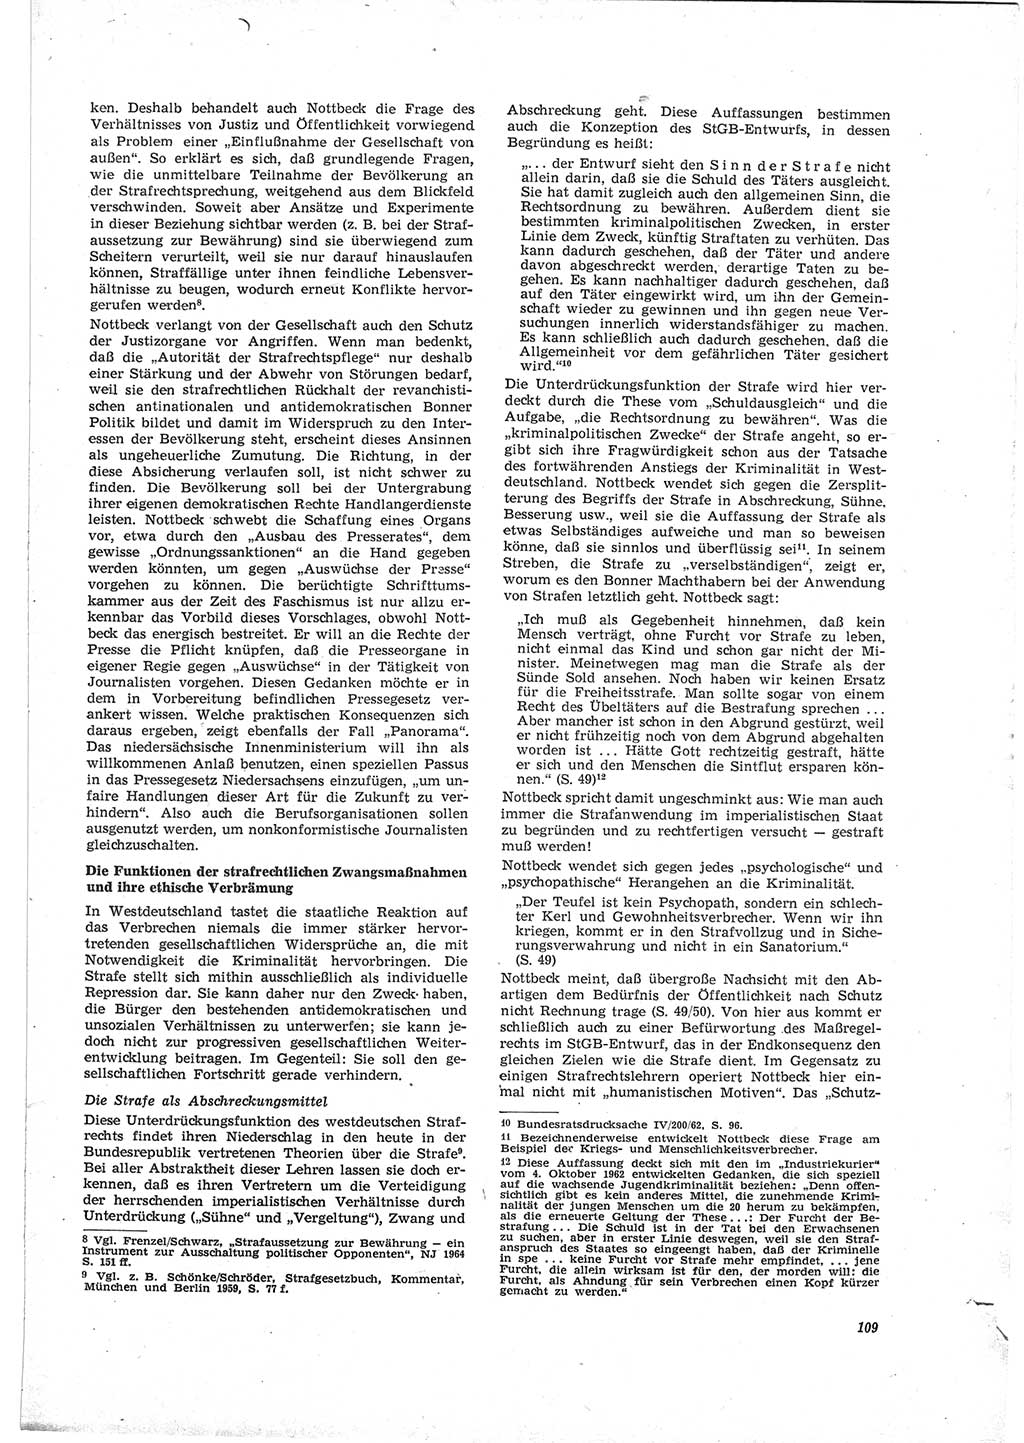 Neue Justiz (NJ), Zeitschrift für Recht und Rechtswissenschaft [Deutsche Demokratische Republik (DDR)], 19. Jahrgang 1965, Seite 109 (NJ DDR 1965, S. 109)